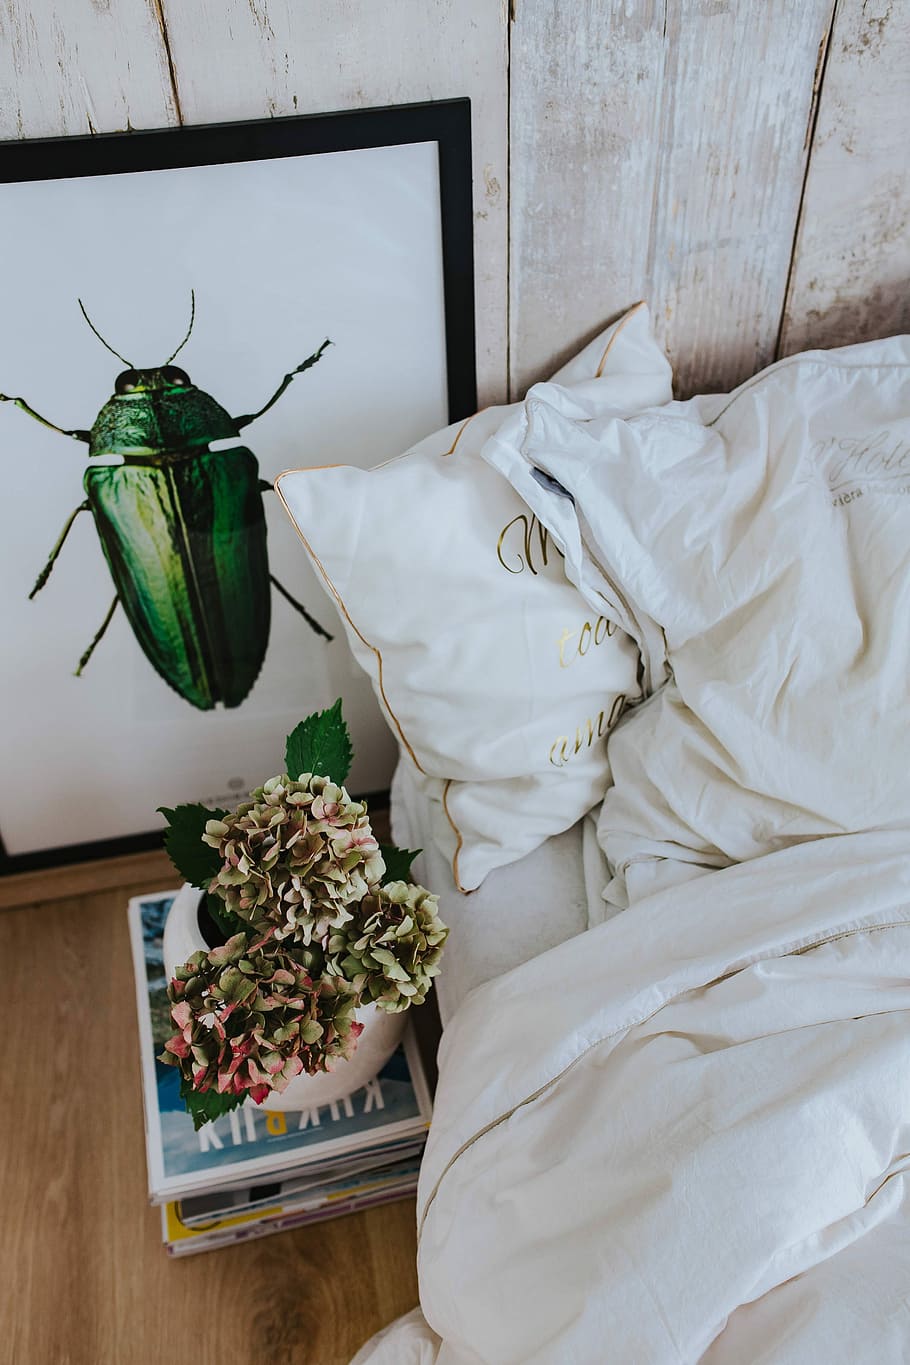 seprai, gambar, hijau, kumbang, tanaman pot, tumpukan, majalah, Putih, tempat tidur, selimut